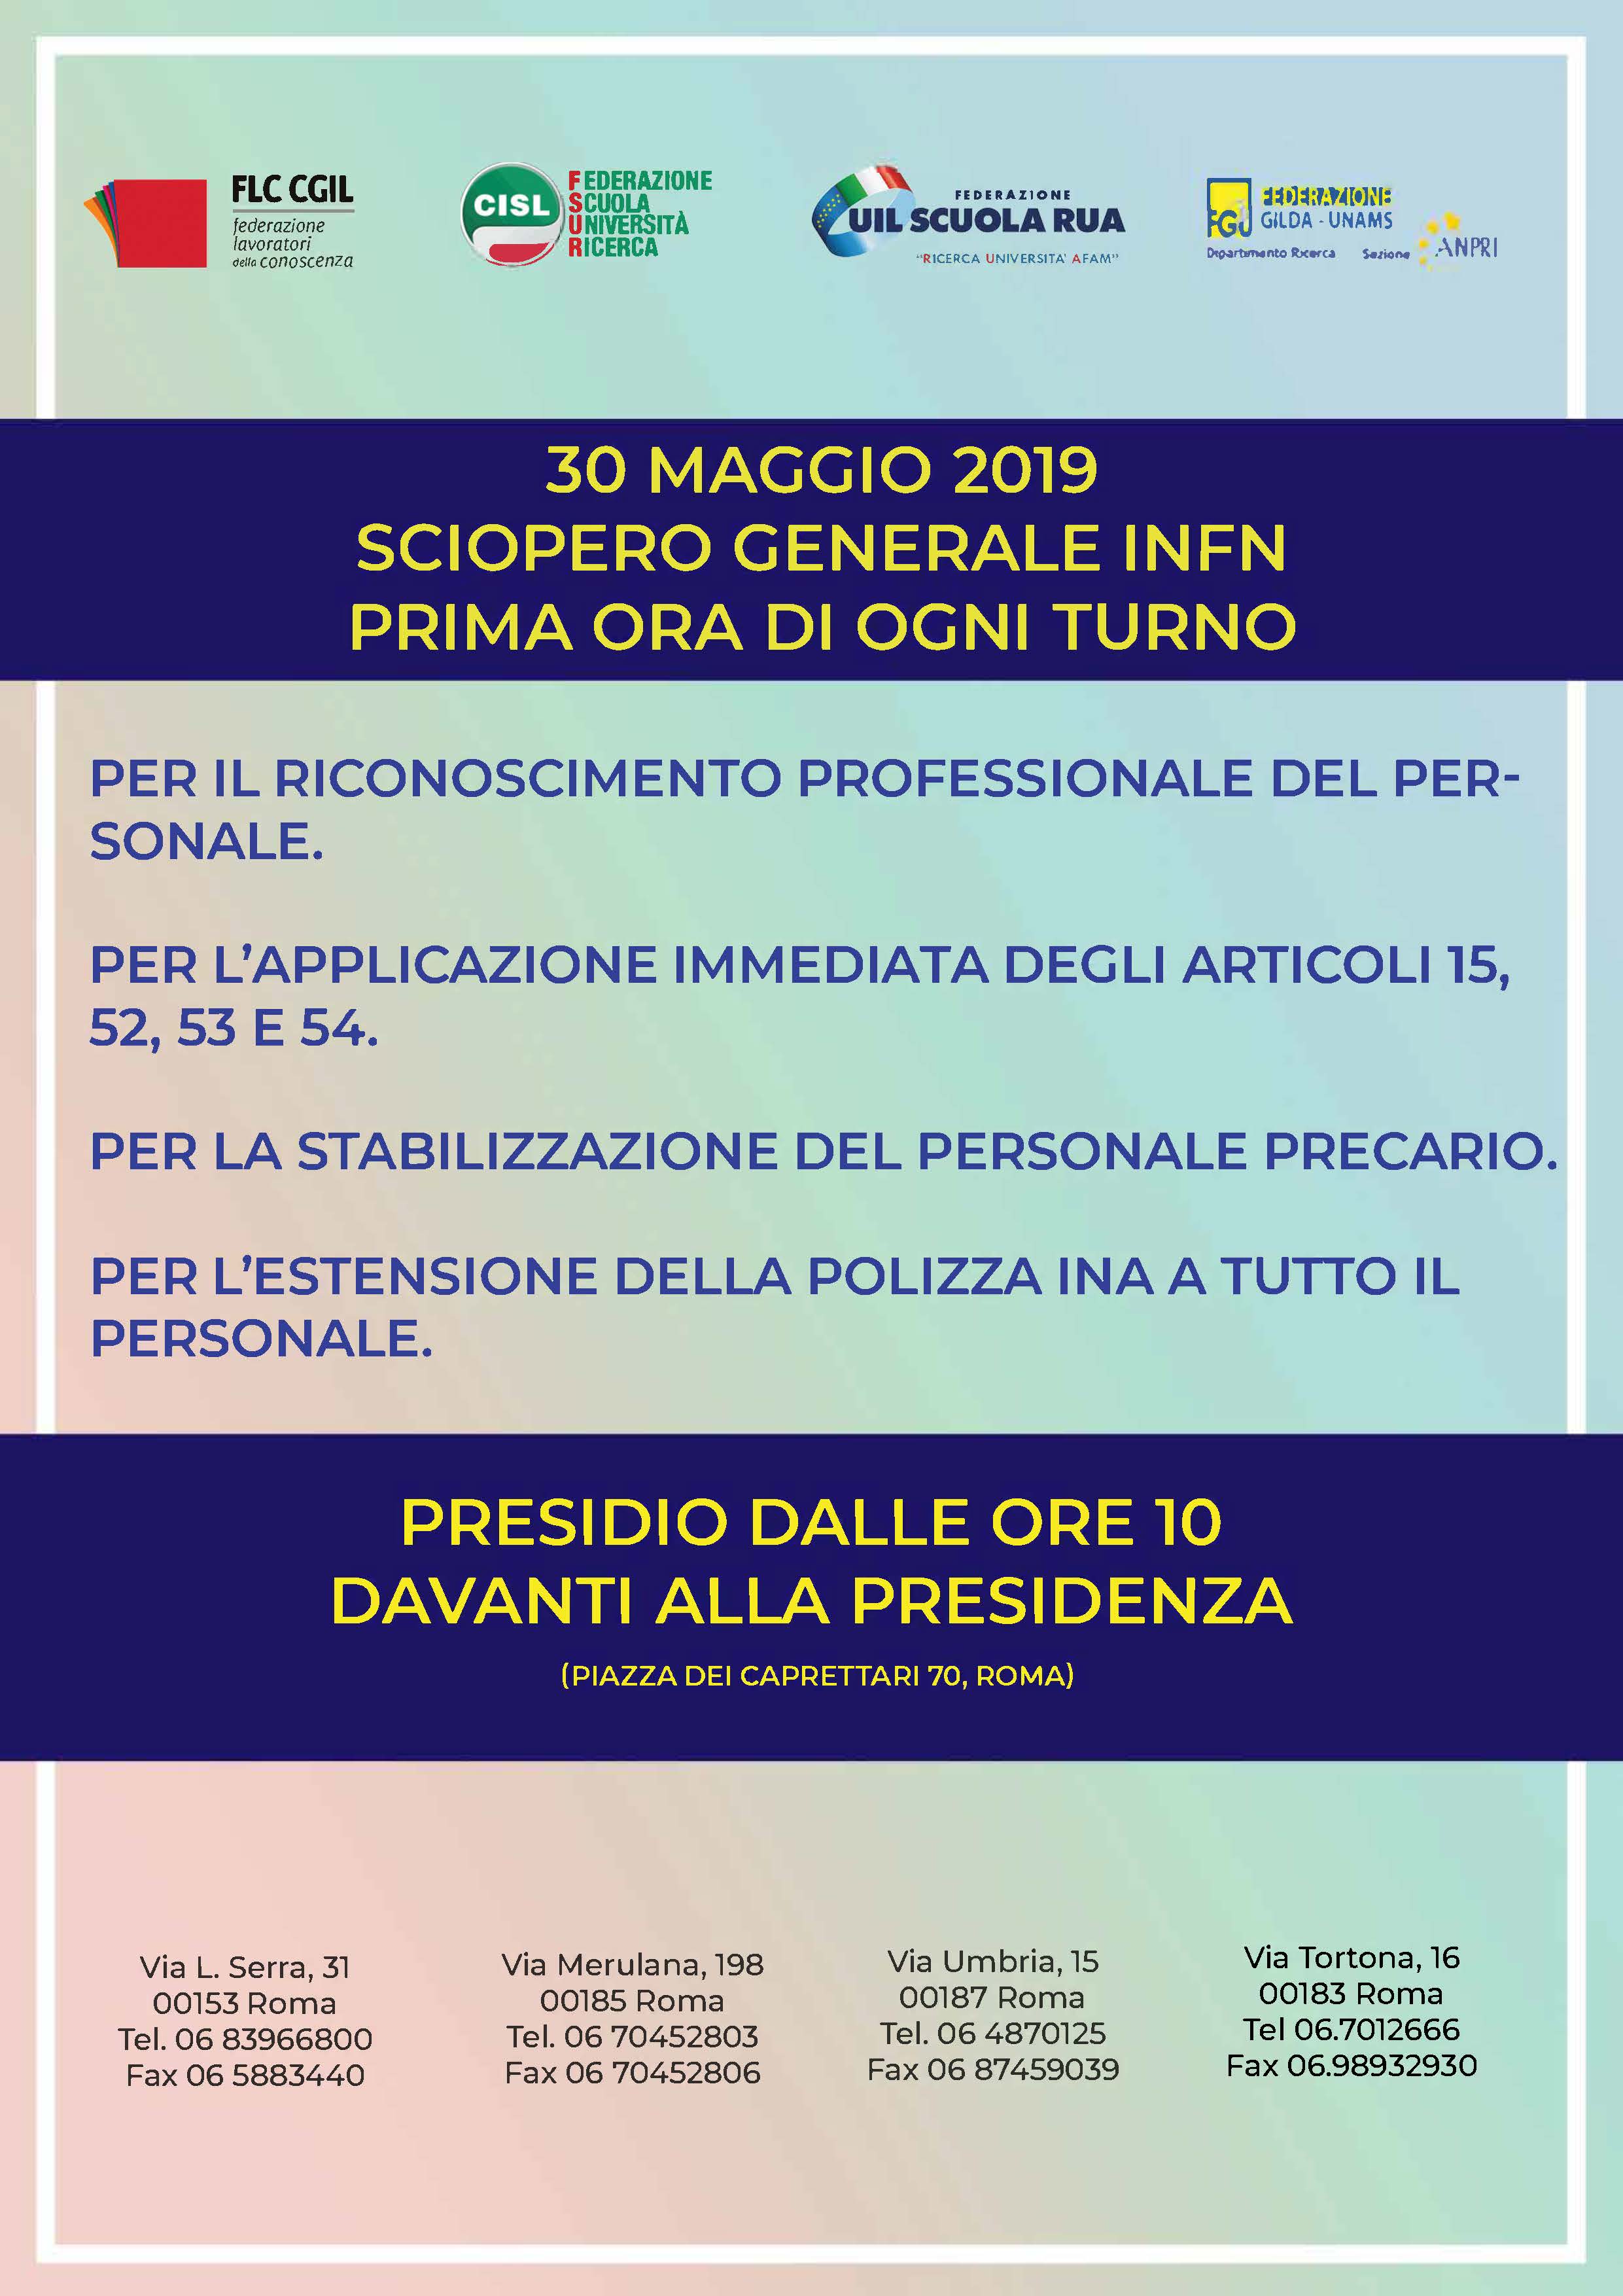 volantino-presidio-e-sciopero-infn-30-maggio-2019